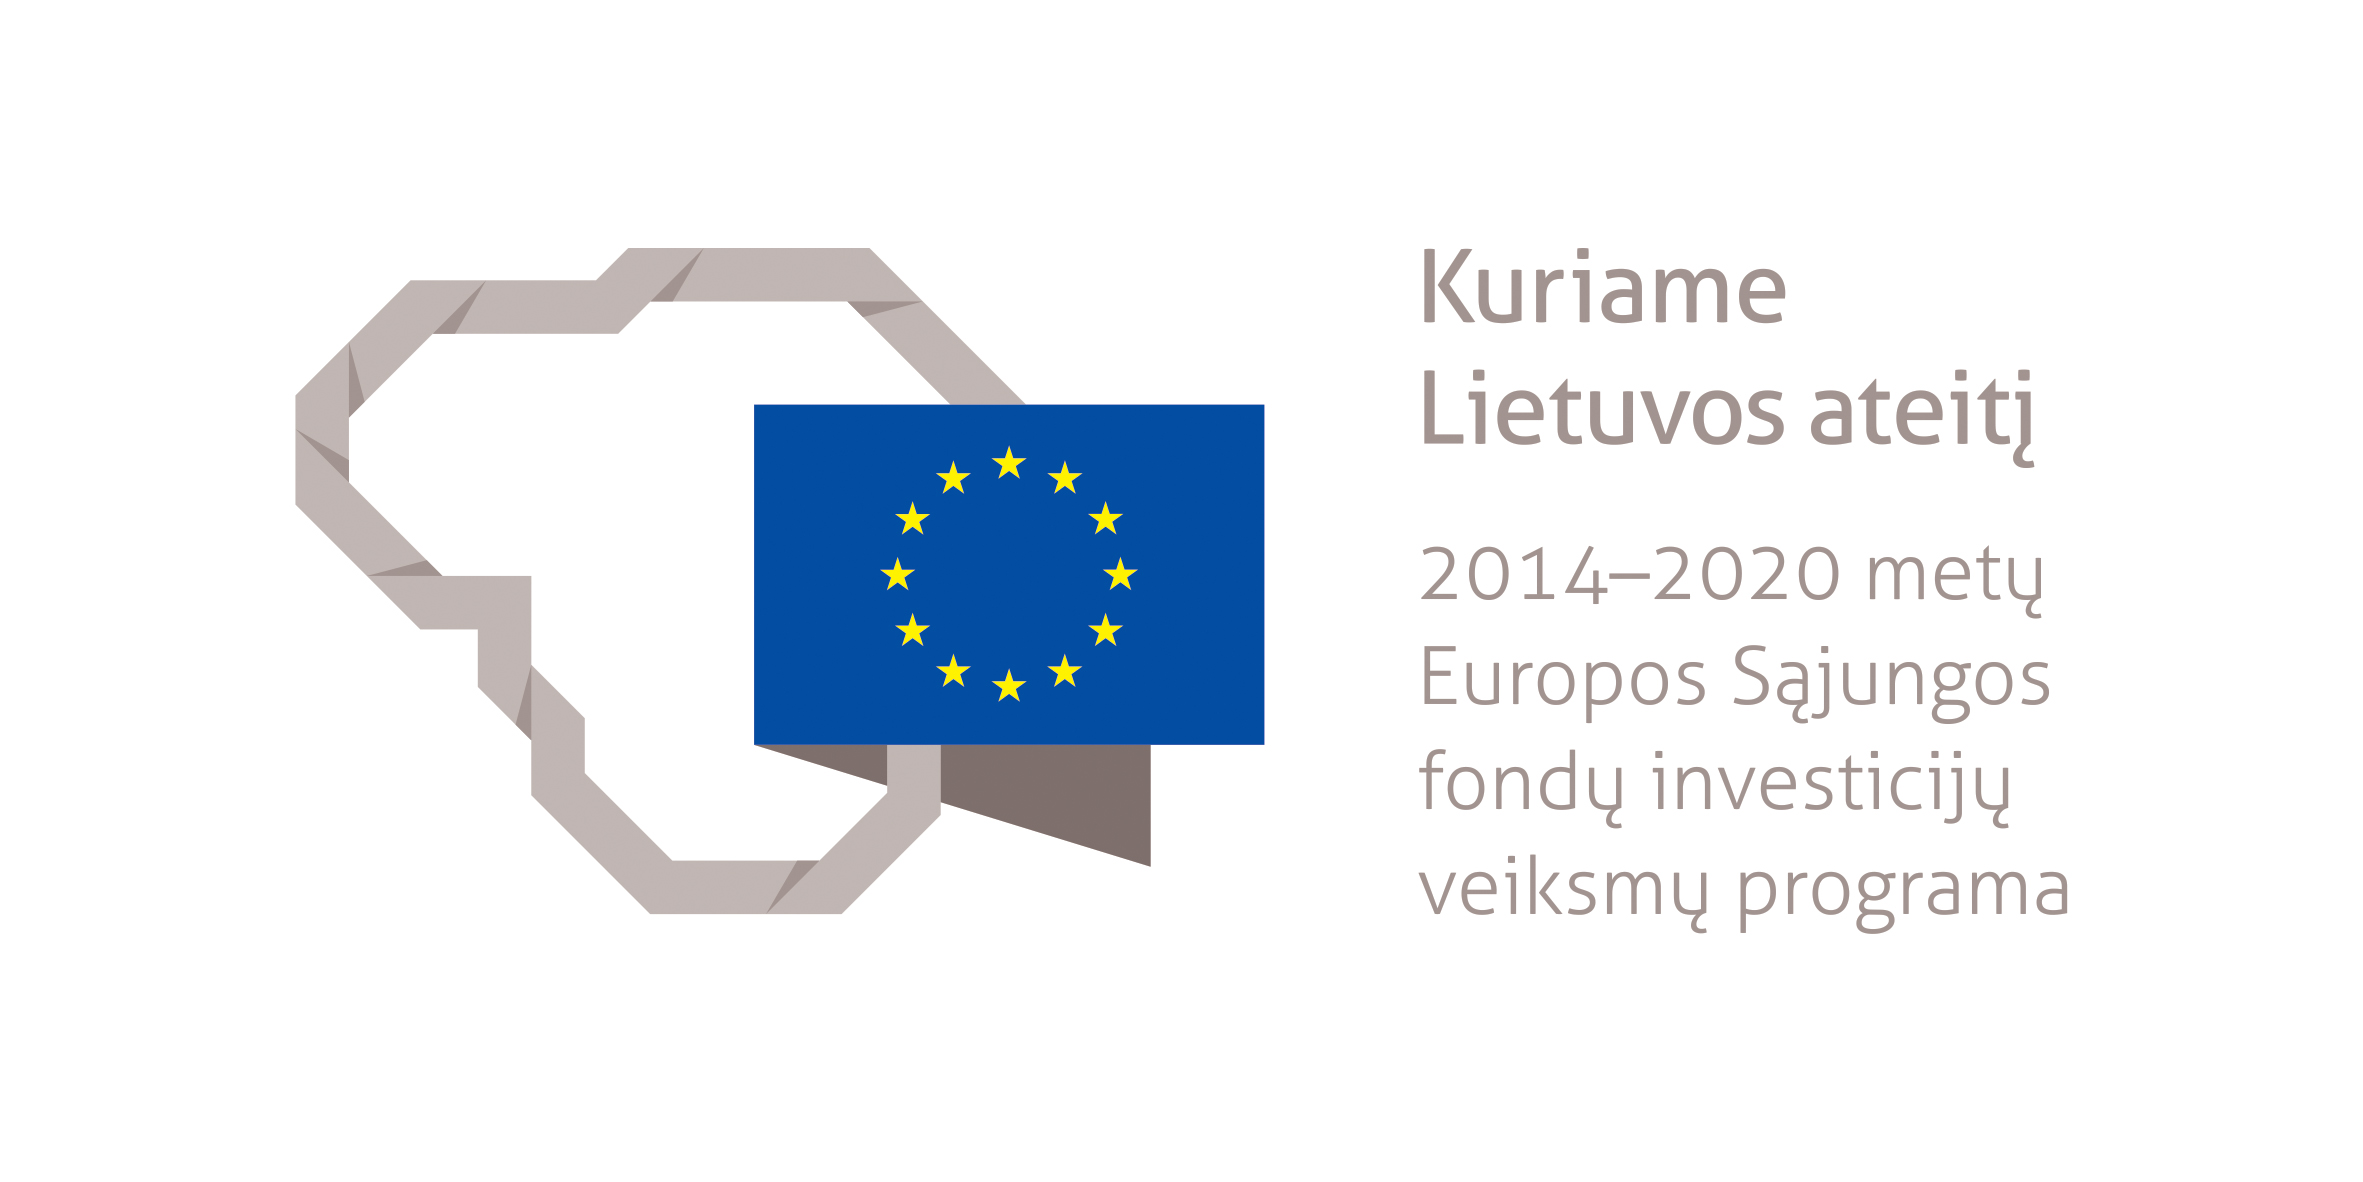 Projektas bendrai finansuotas iš Europos socialinio fondo lėšų (projekto Nr. 09.3.3-LMT-K-712-19-0076) pagal dotacijos sutartį su Lietuvos mokslo taryba (LMTLT)